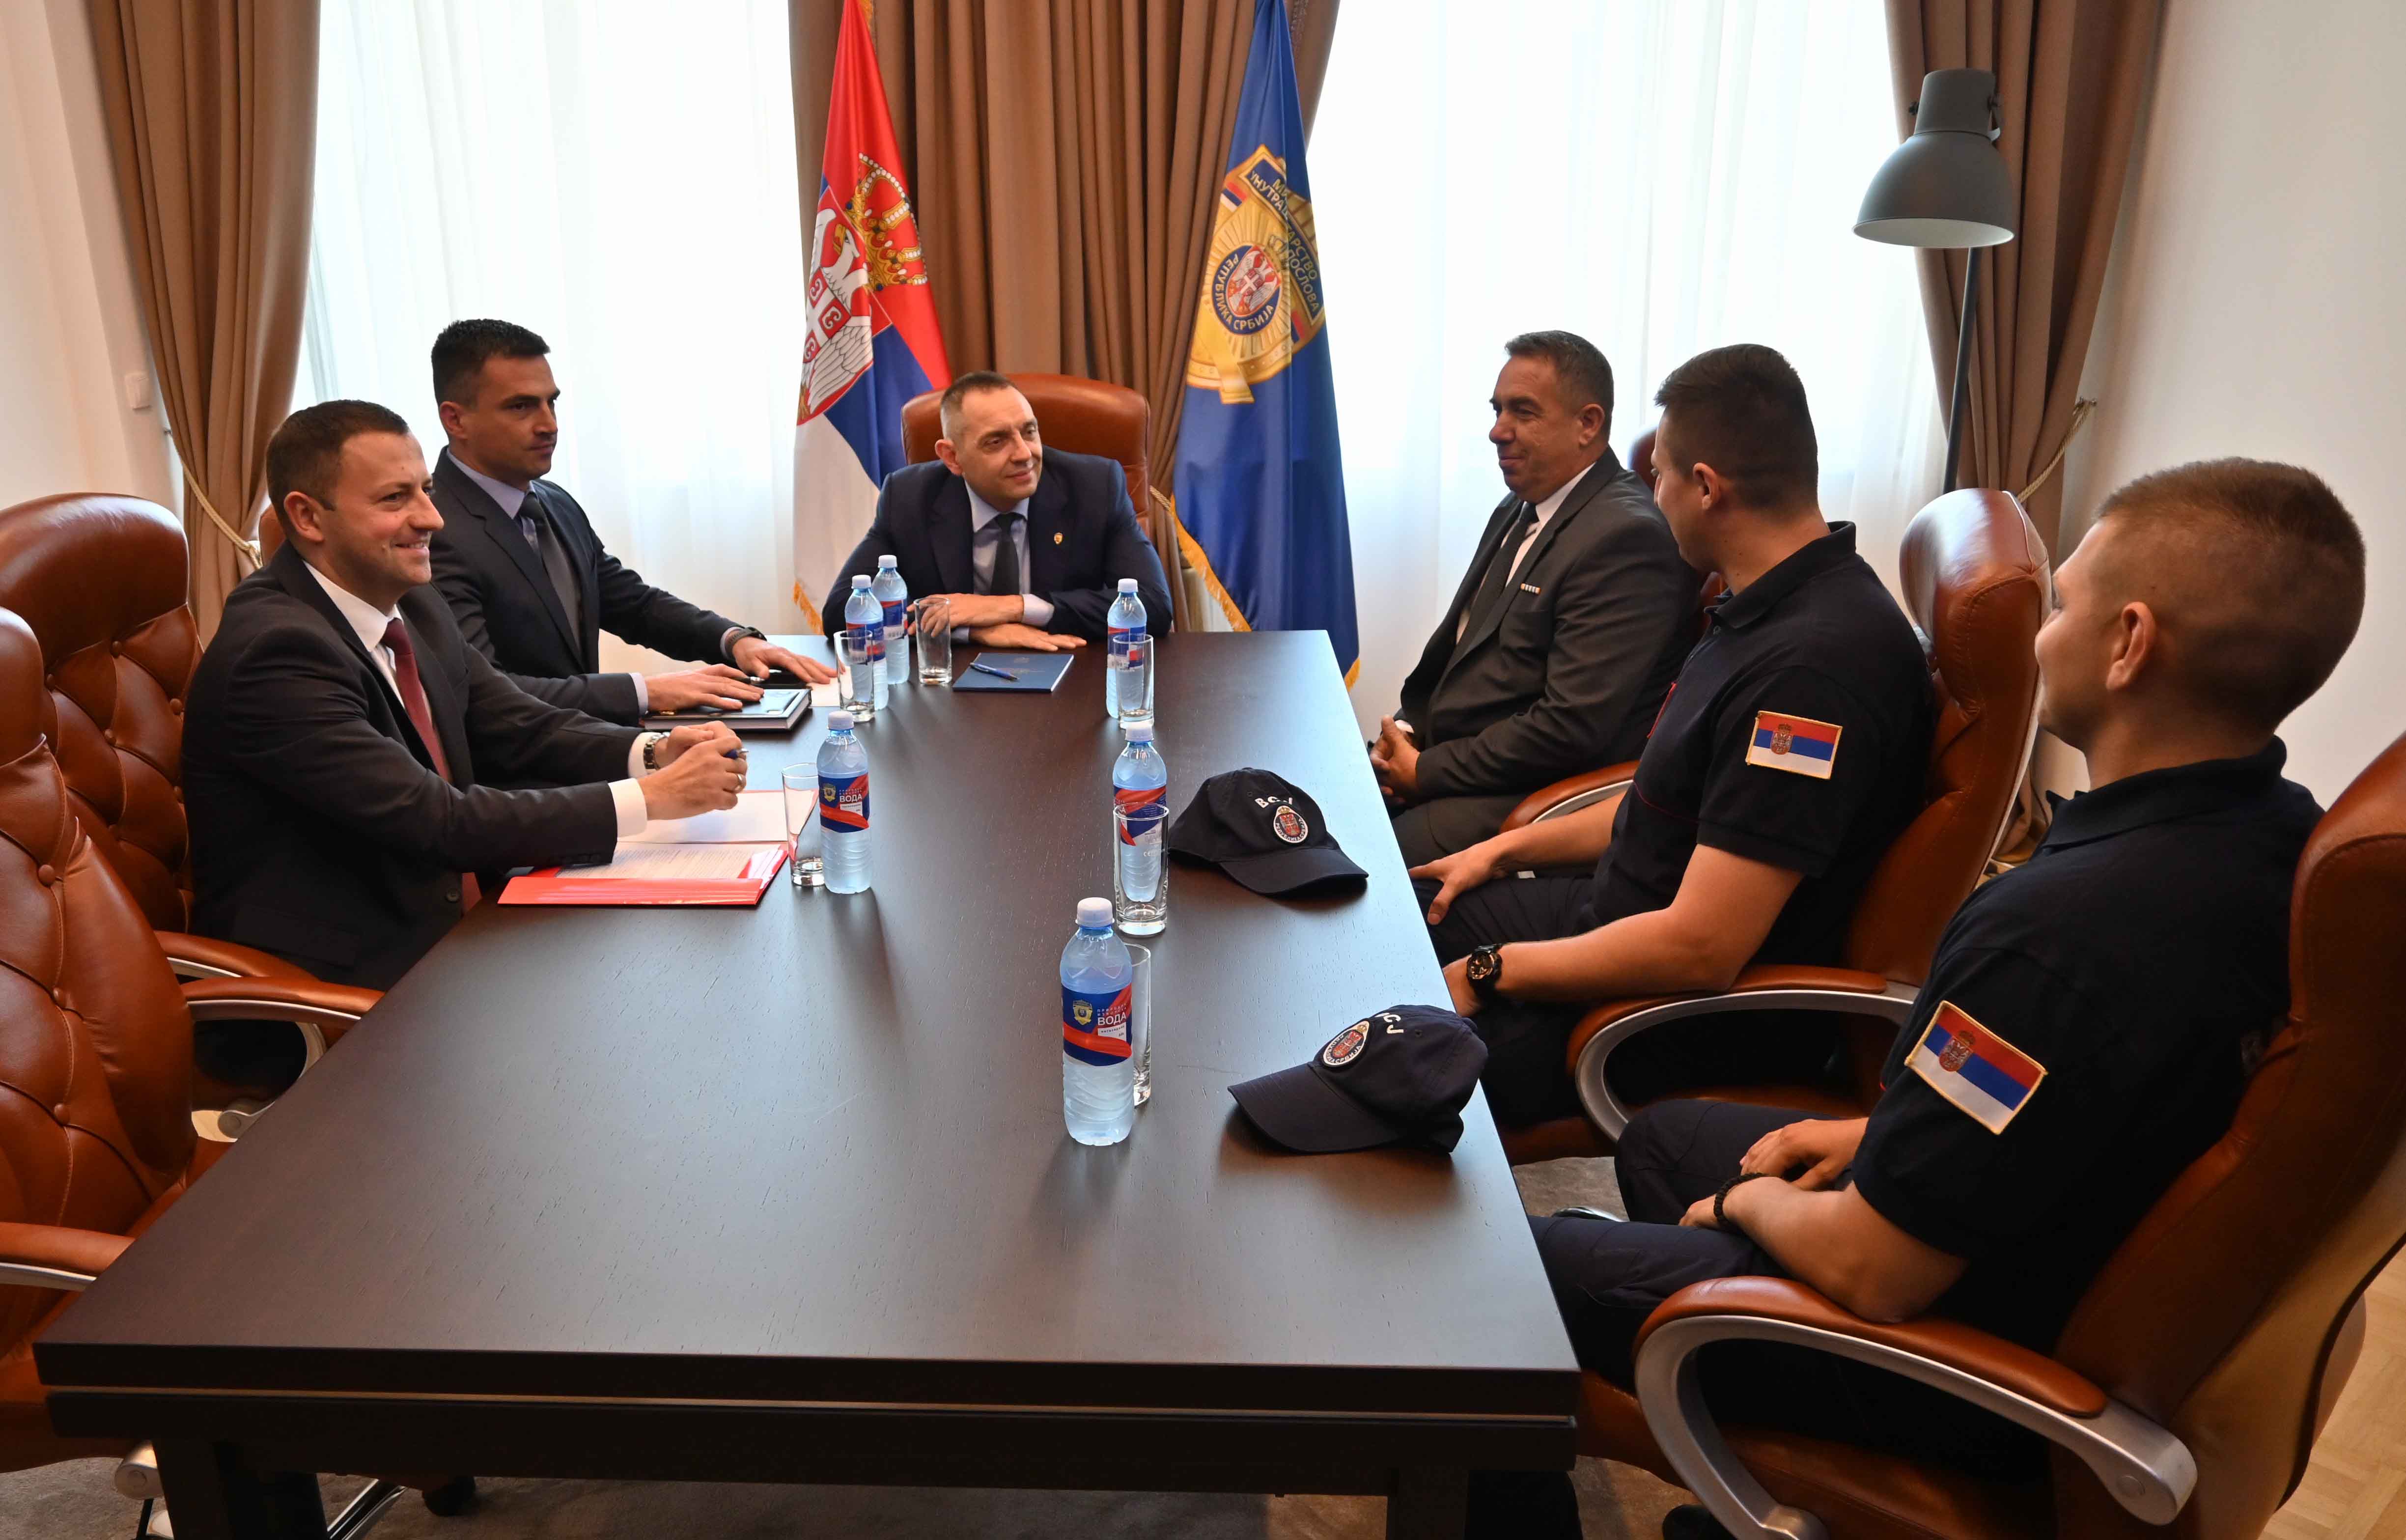 Министар Александар Вулин похвалио је припаднике Ватрогасно-спасилачке чете у Зајечару, поручивши им да су они истински хероји